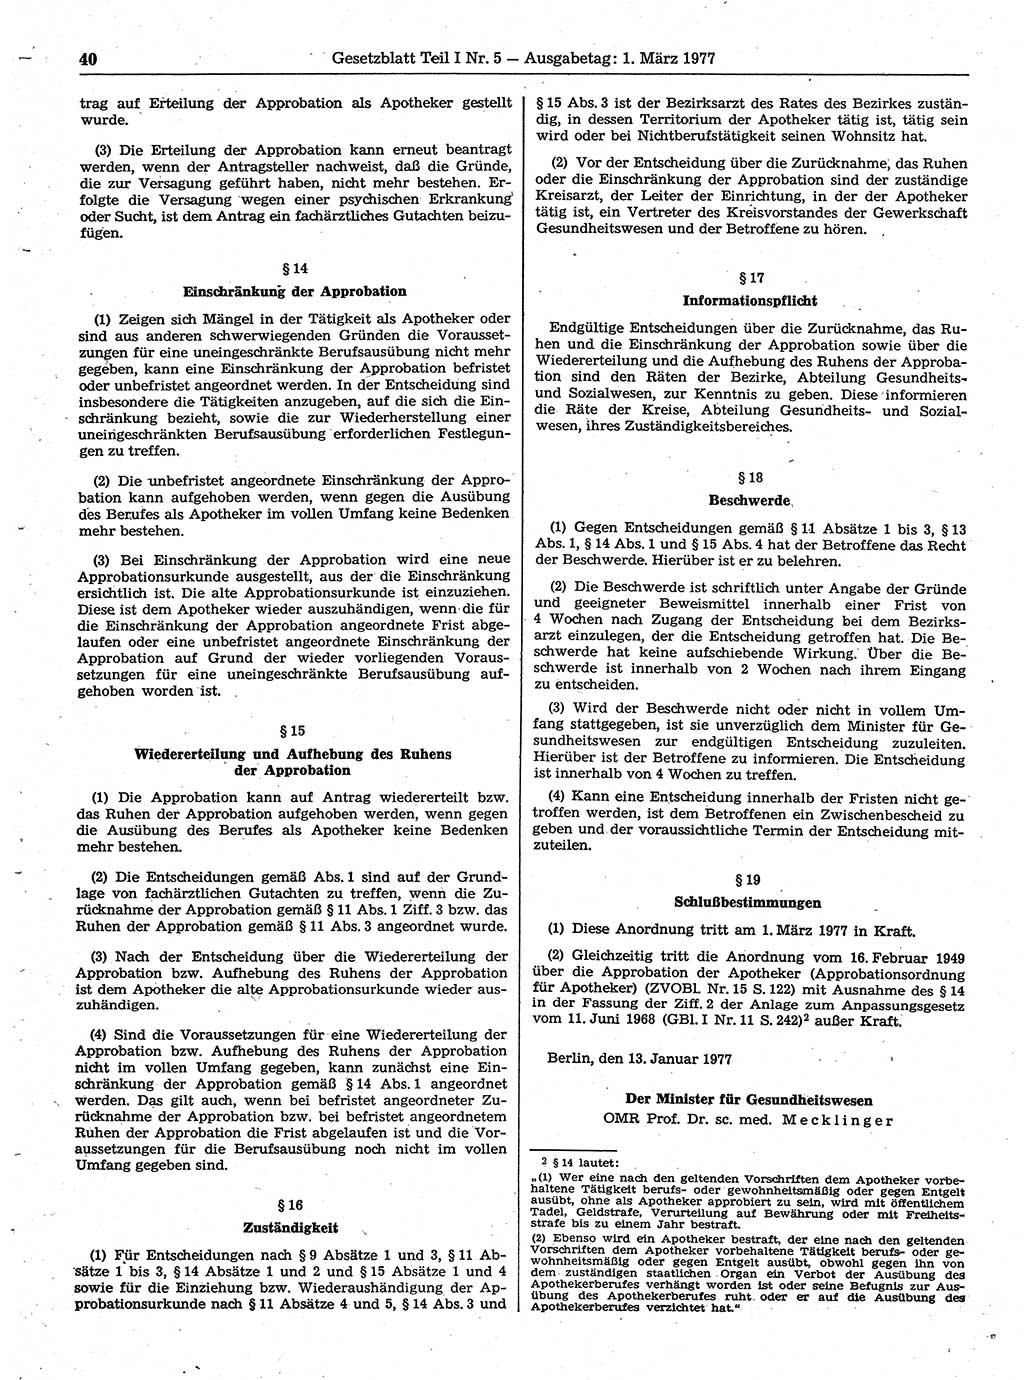 Gesetzblatt (GBl.) der Deutschen Demokratischen Republik (DDR) Teil Ⅰ 1977, Seite 40 (GBl. DDR Ⅰ 1977, S. 40)